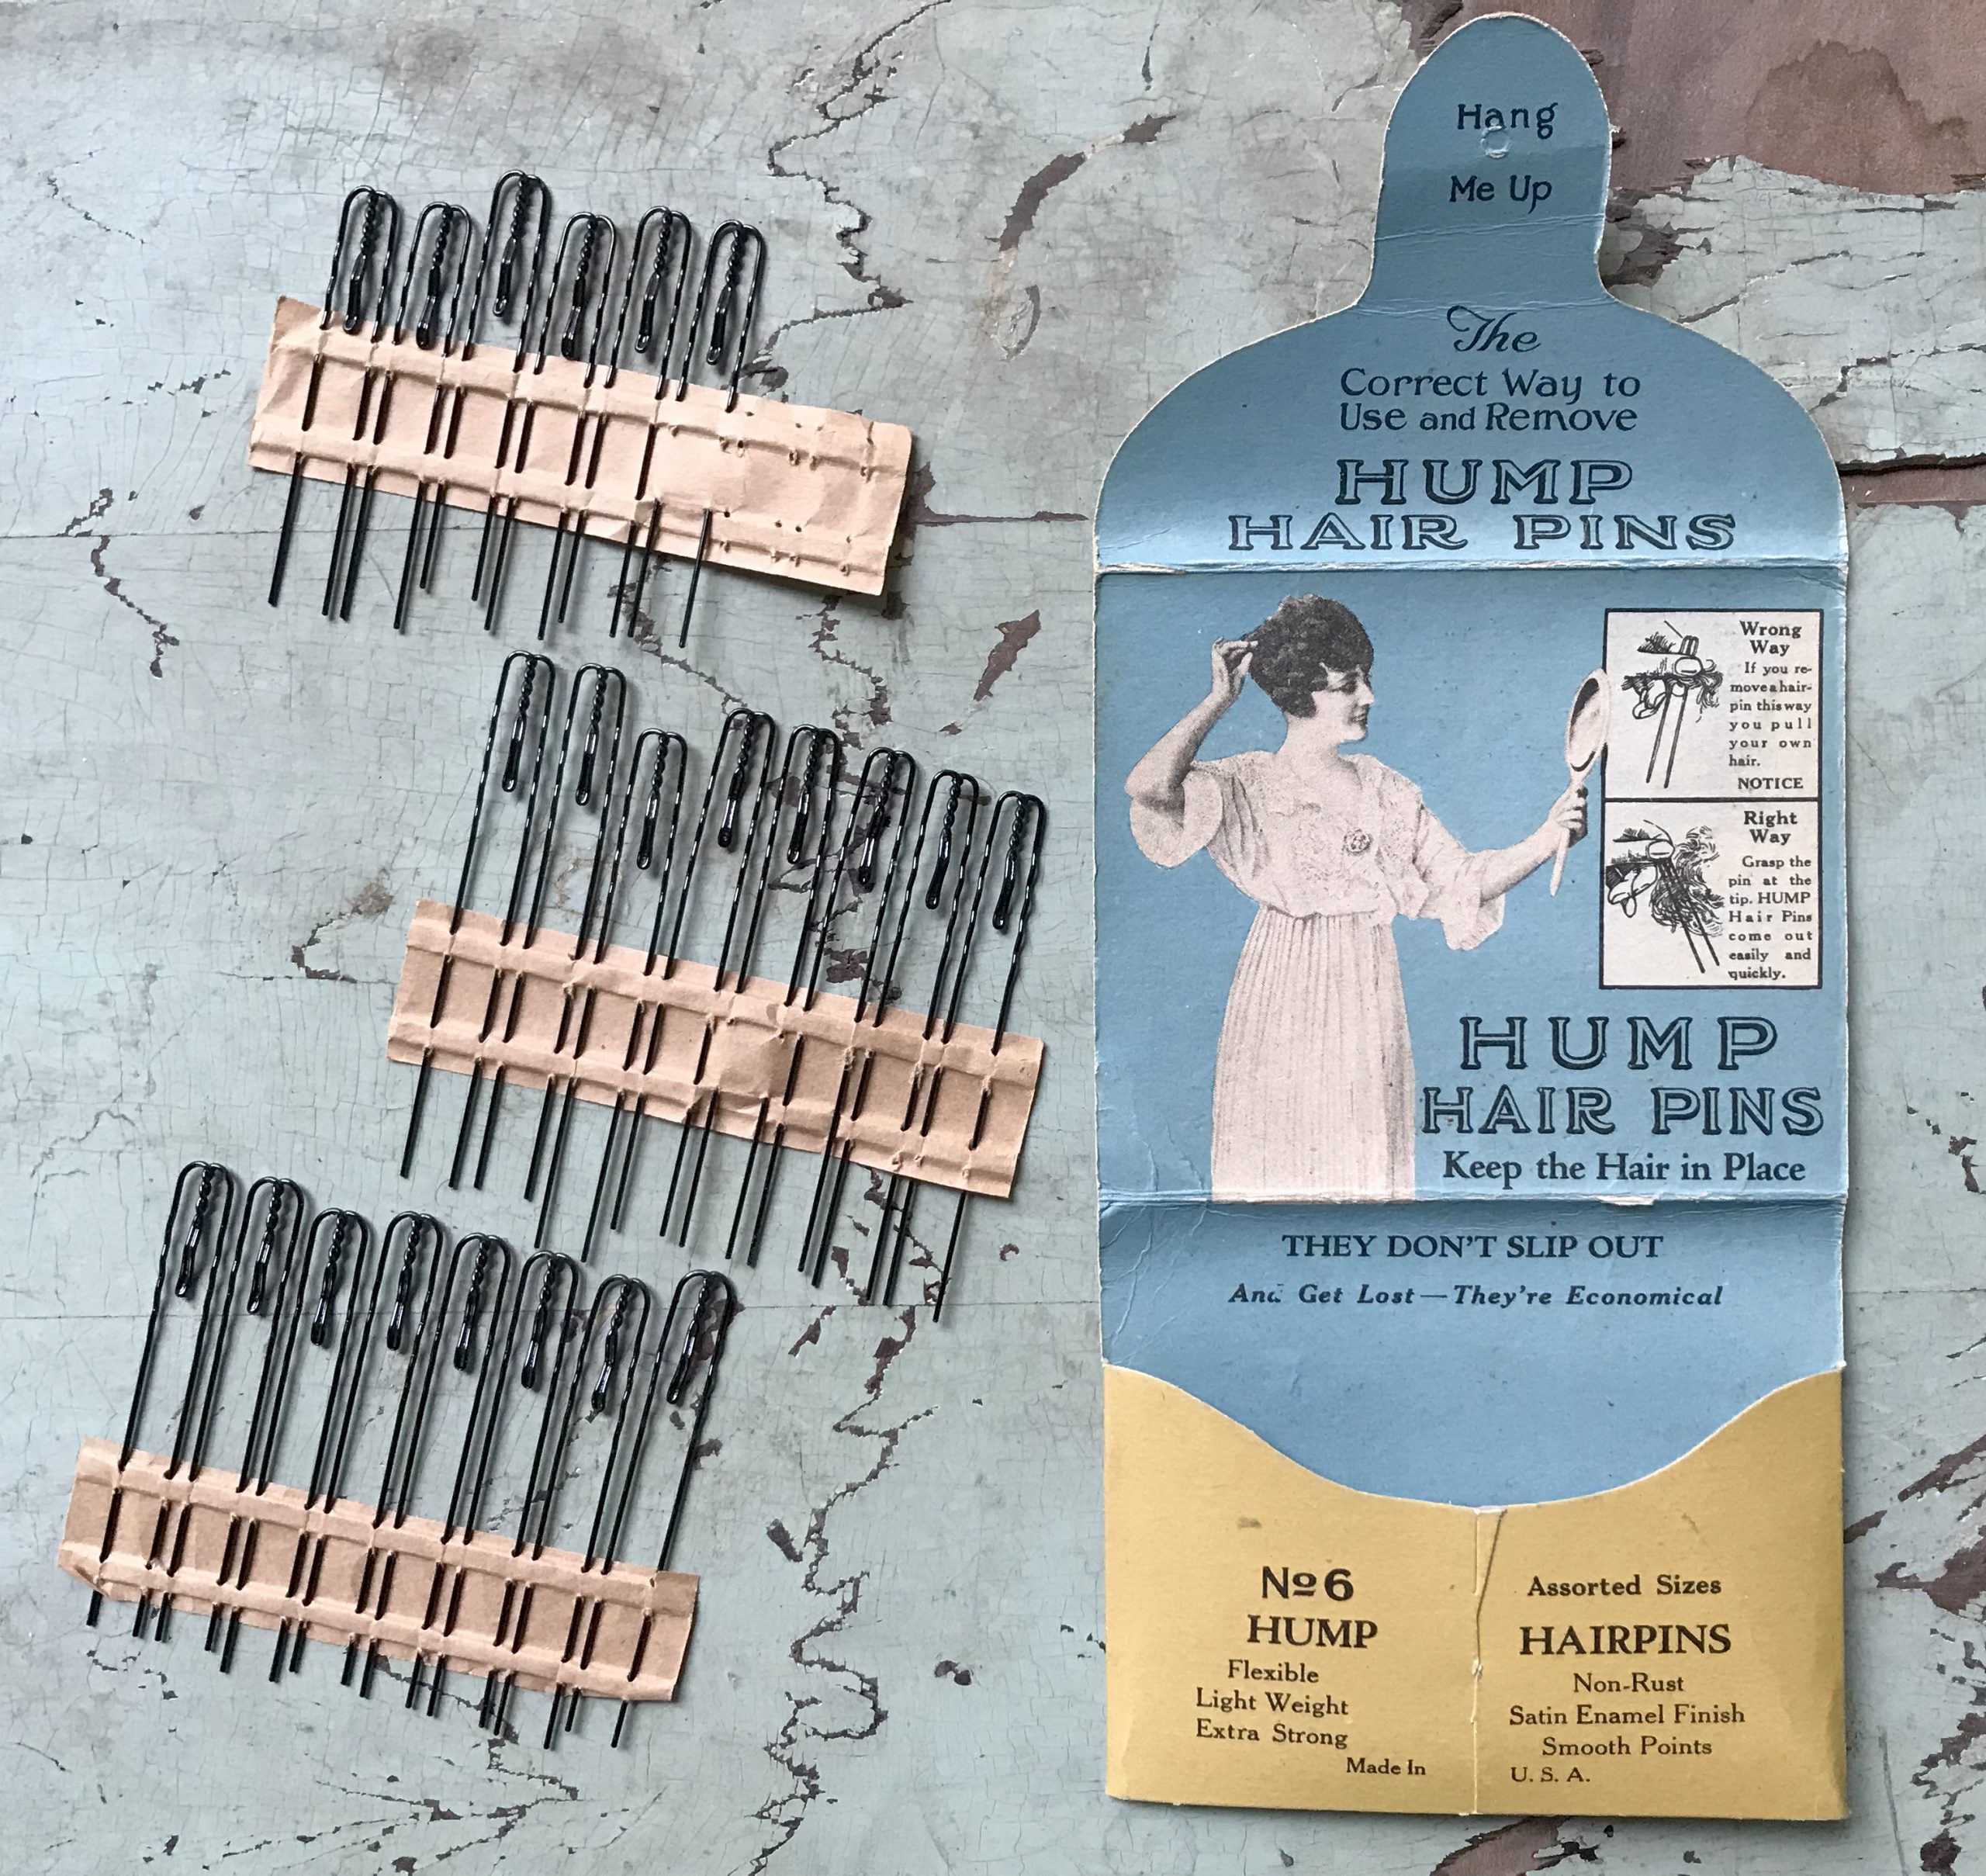 Hump Hair Pin MFG Co., est. 1903 - Made 